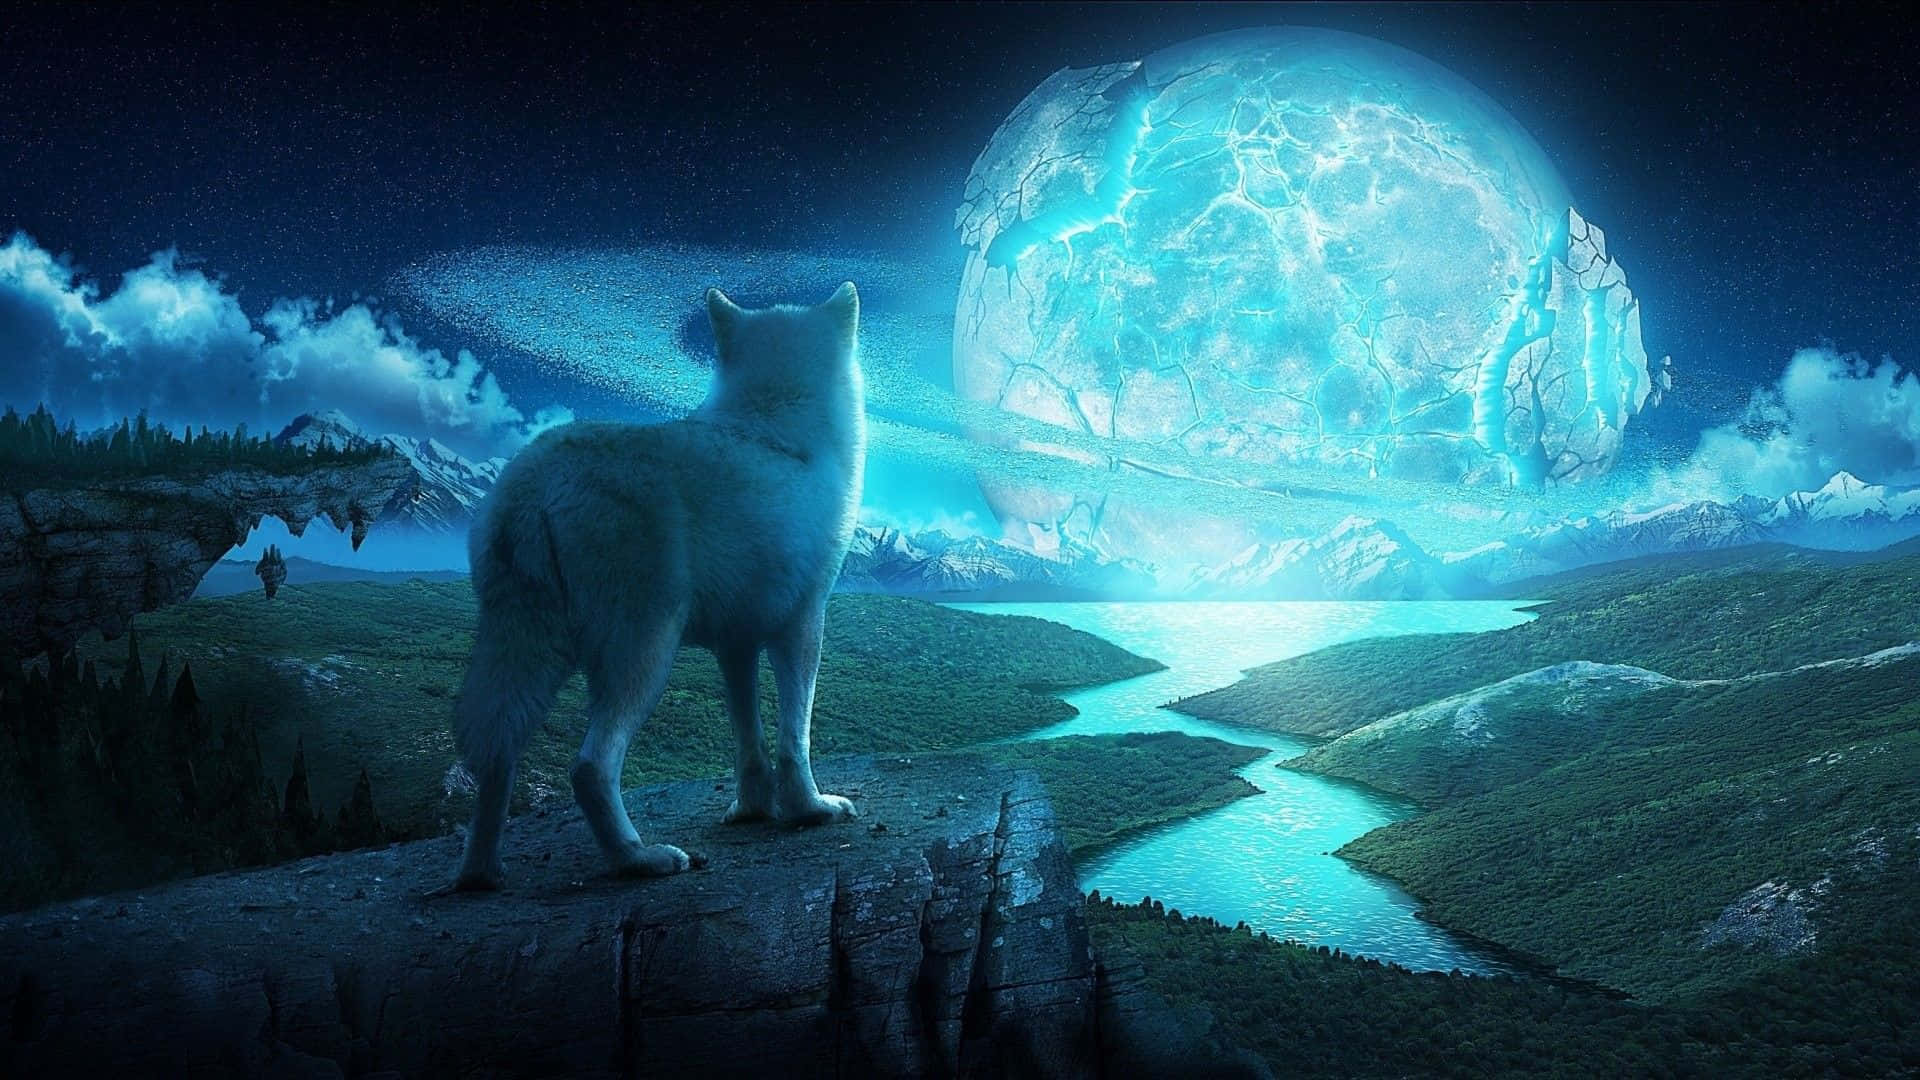 Einefaszinierende Vision Eines Wasser- Und Feuerwolfs Am Nächtlichen Himmel Wallpaper